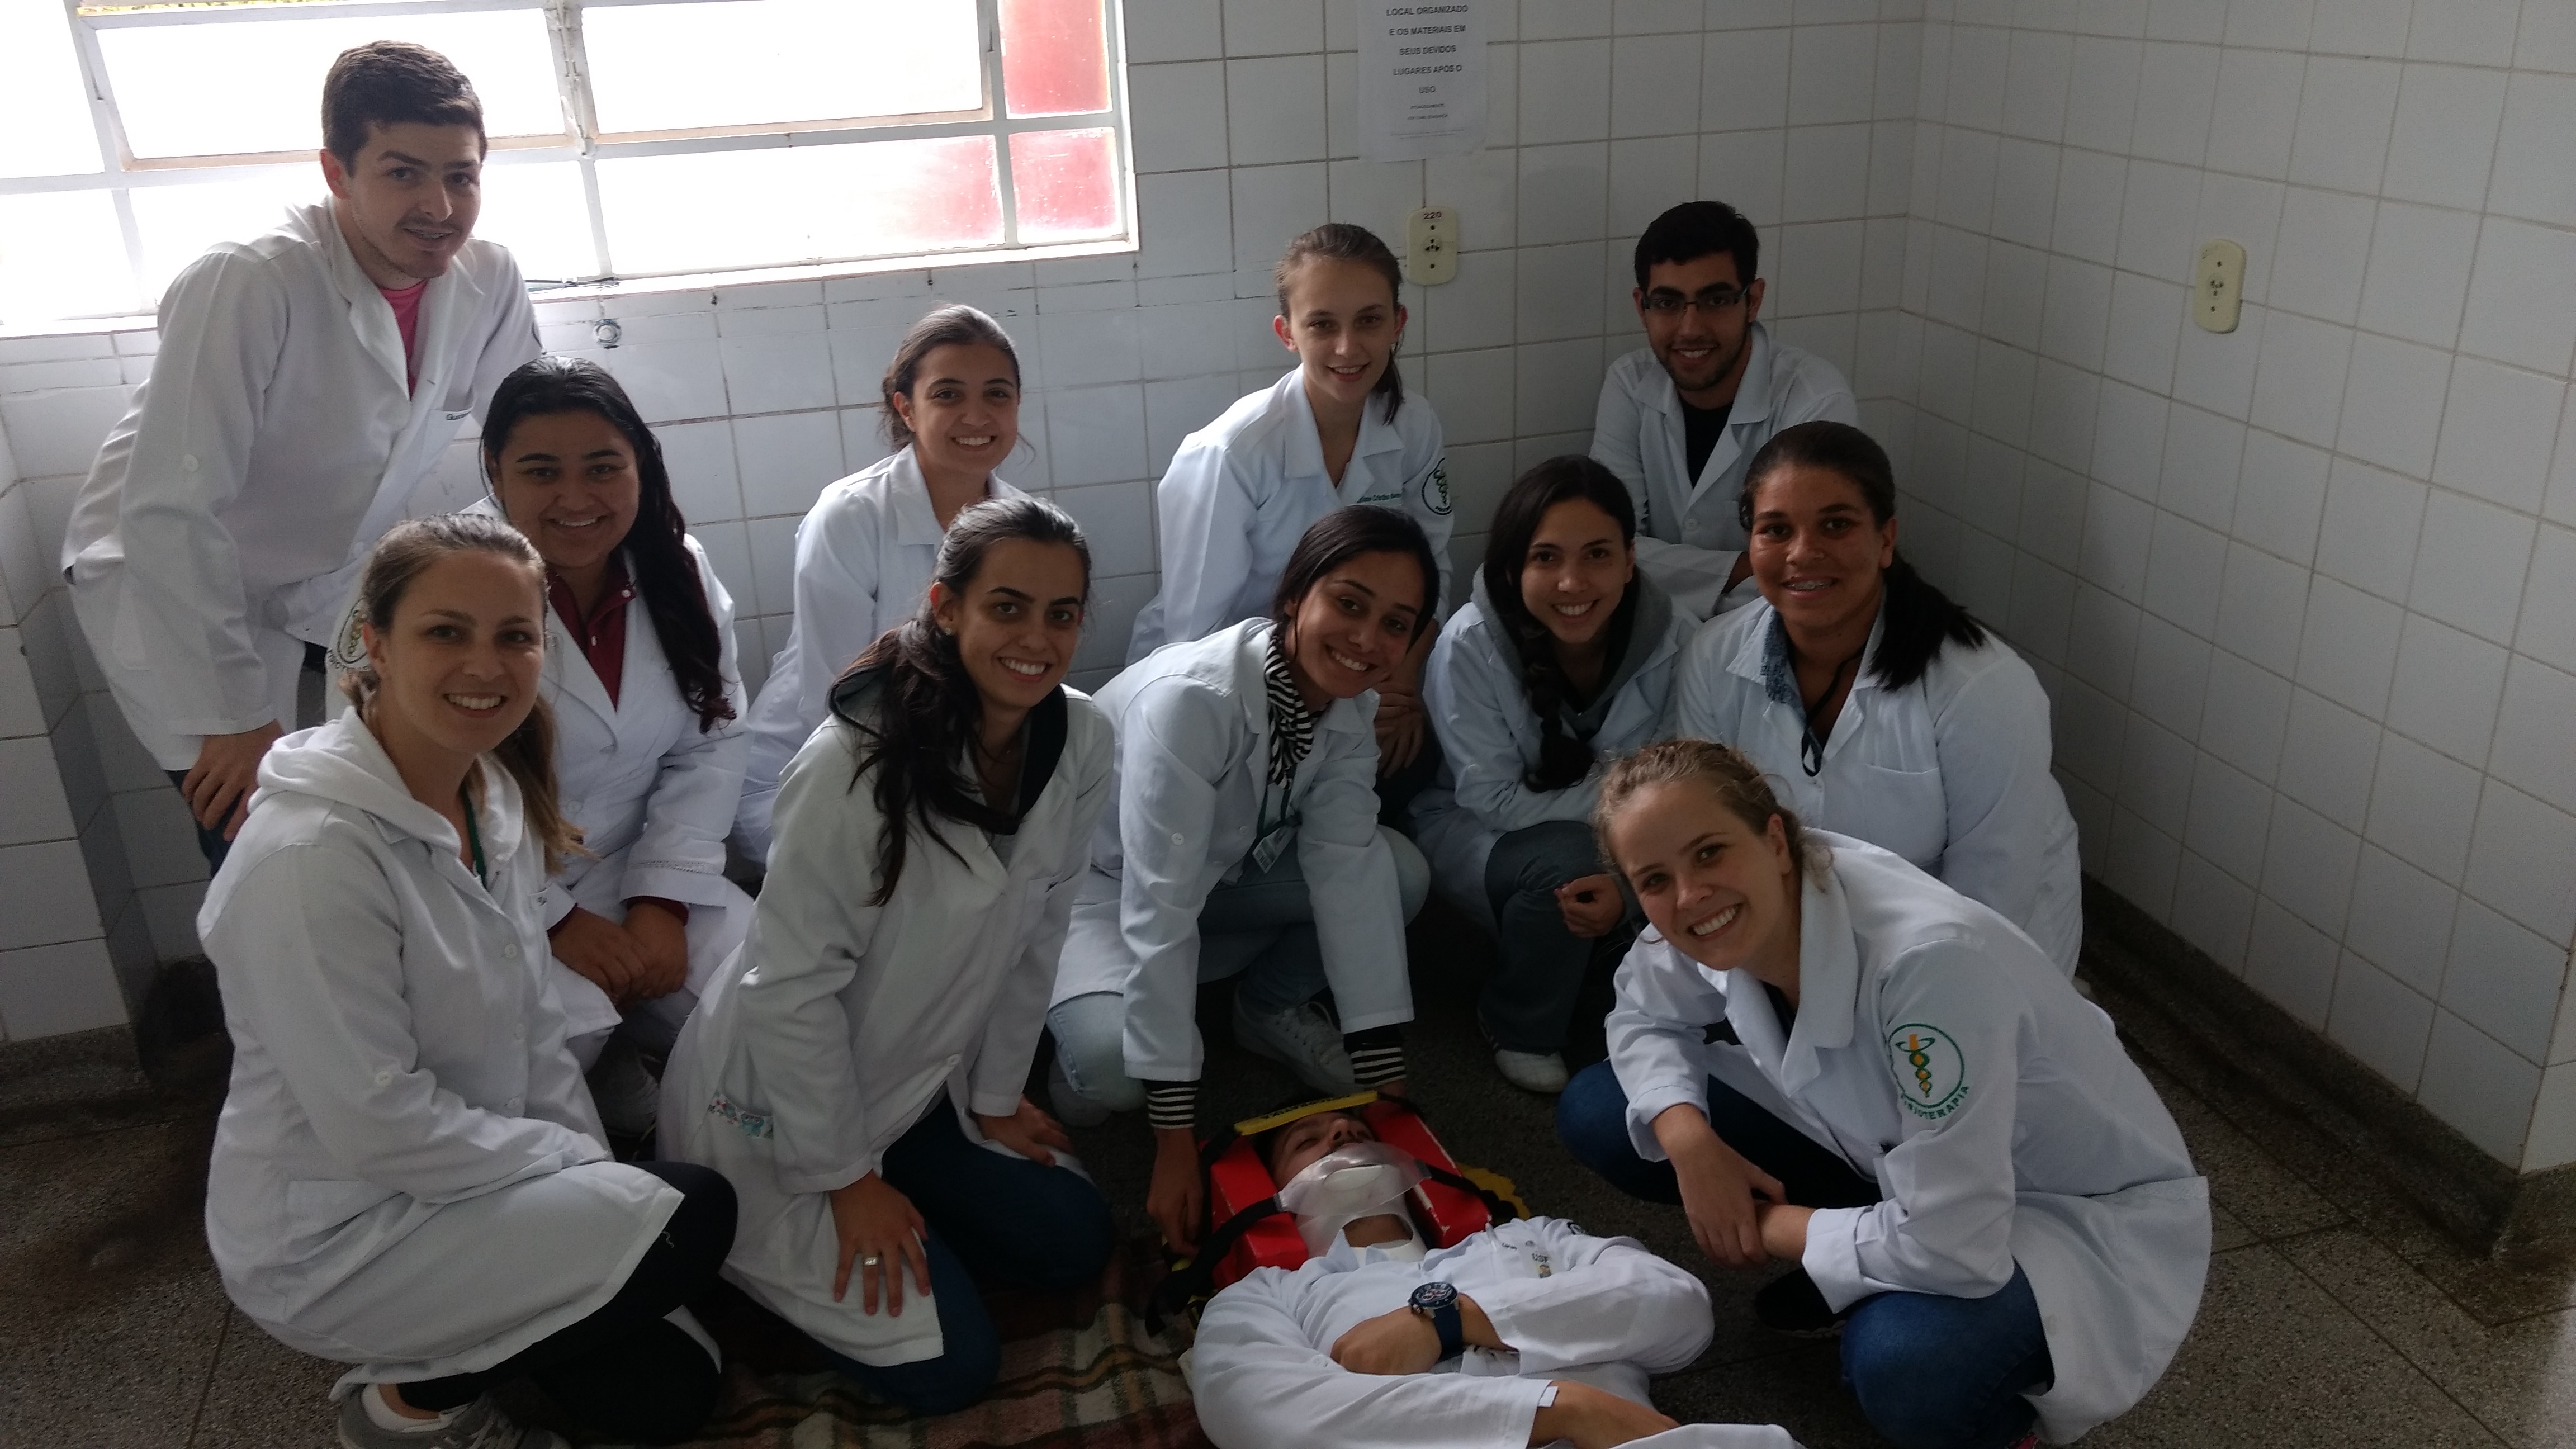 Alunos do Curso de Fisioterapia realizaram atividade no SAMU de Bragança Paulista